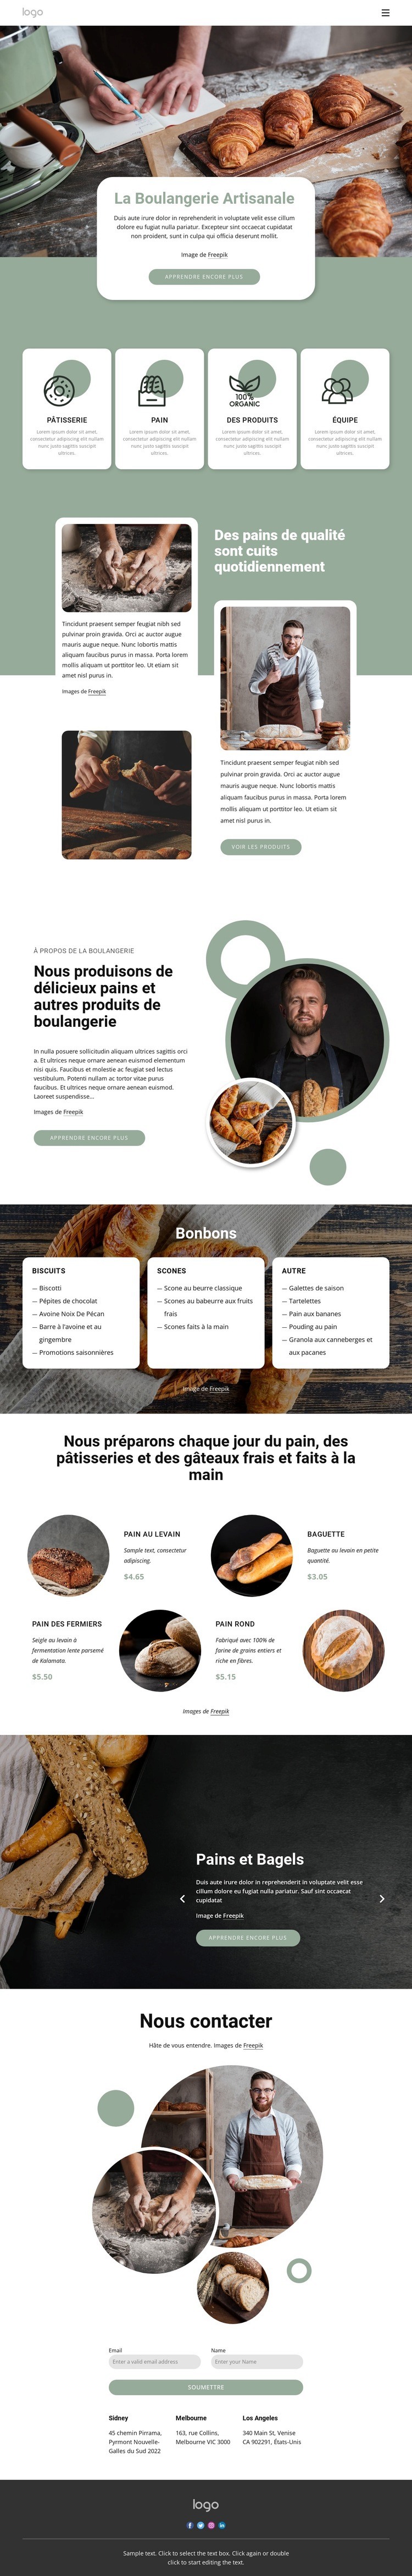 La boulangerie artisanale Maquette de site Web